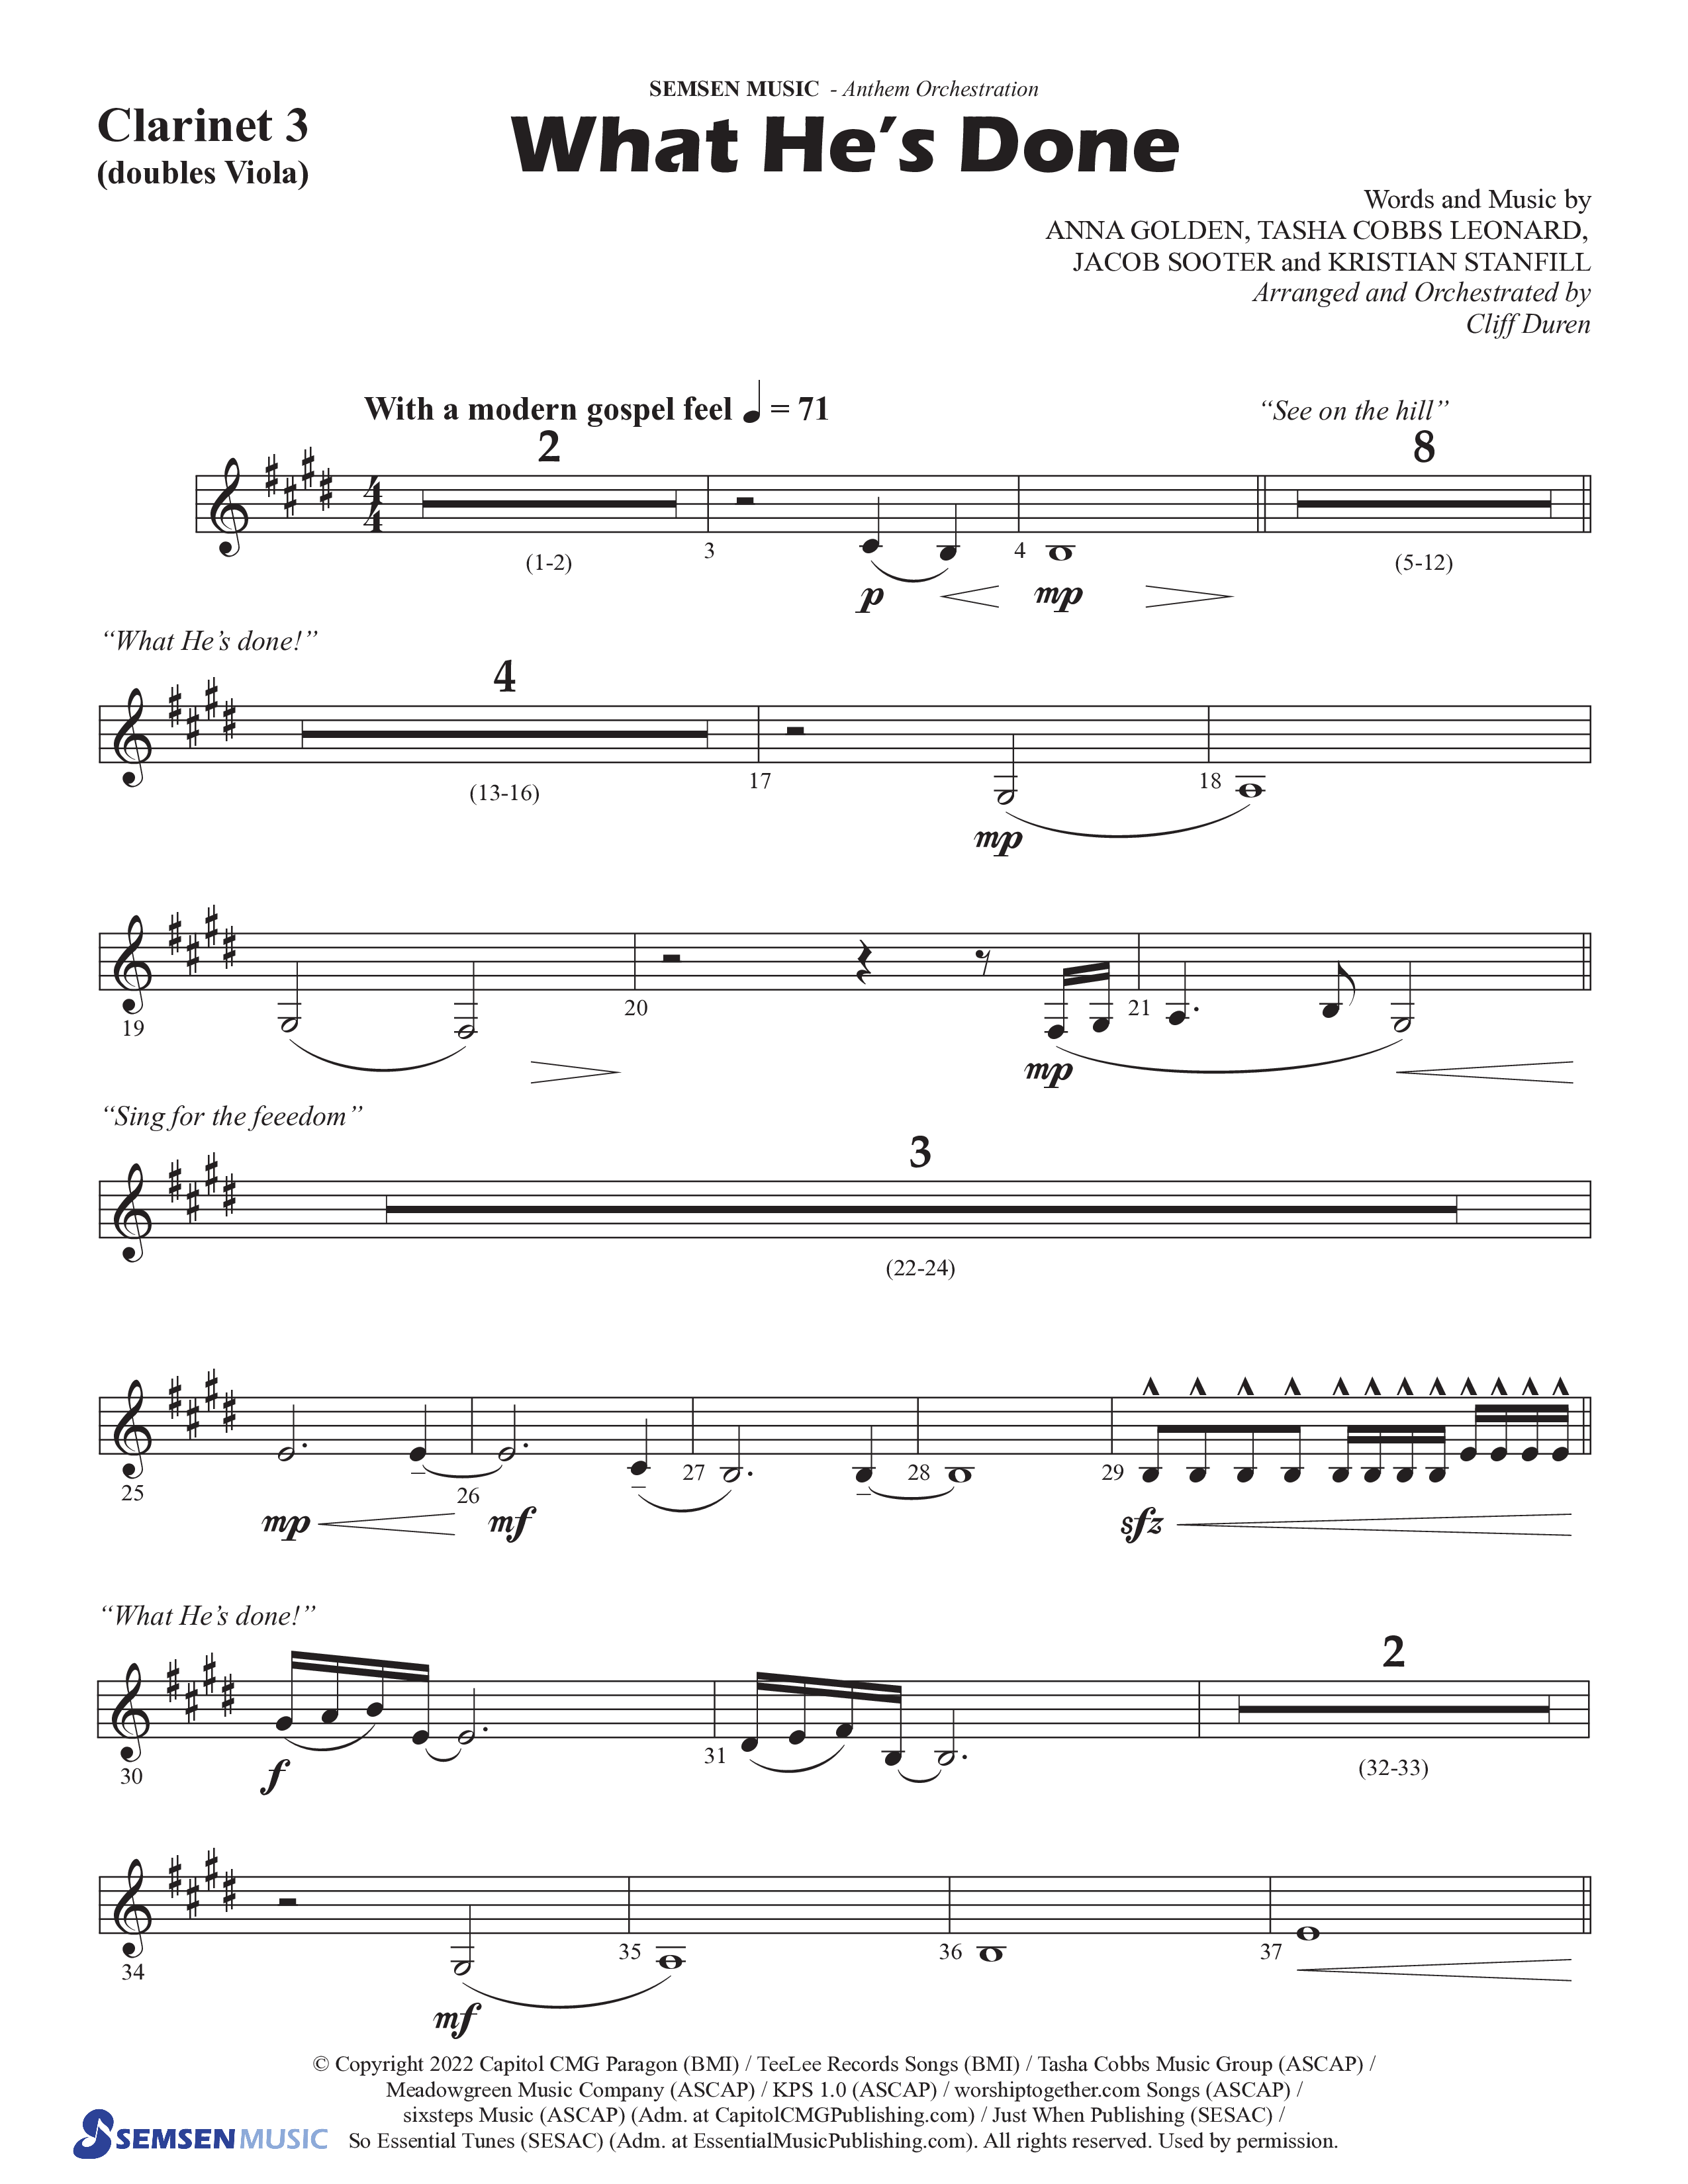 What He's Done (Choral Anthem SATB) Clarinet 3 (Semsen Music / Arr. Cliff Duren)